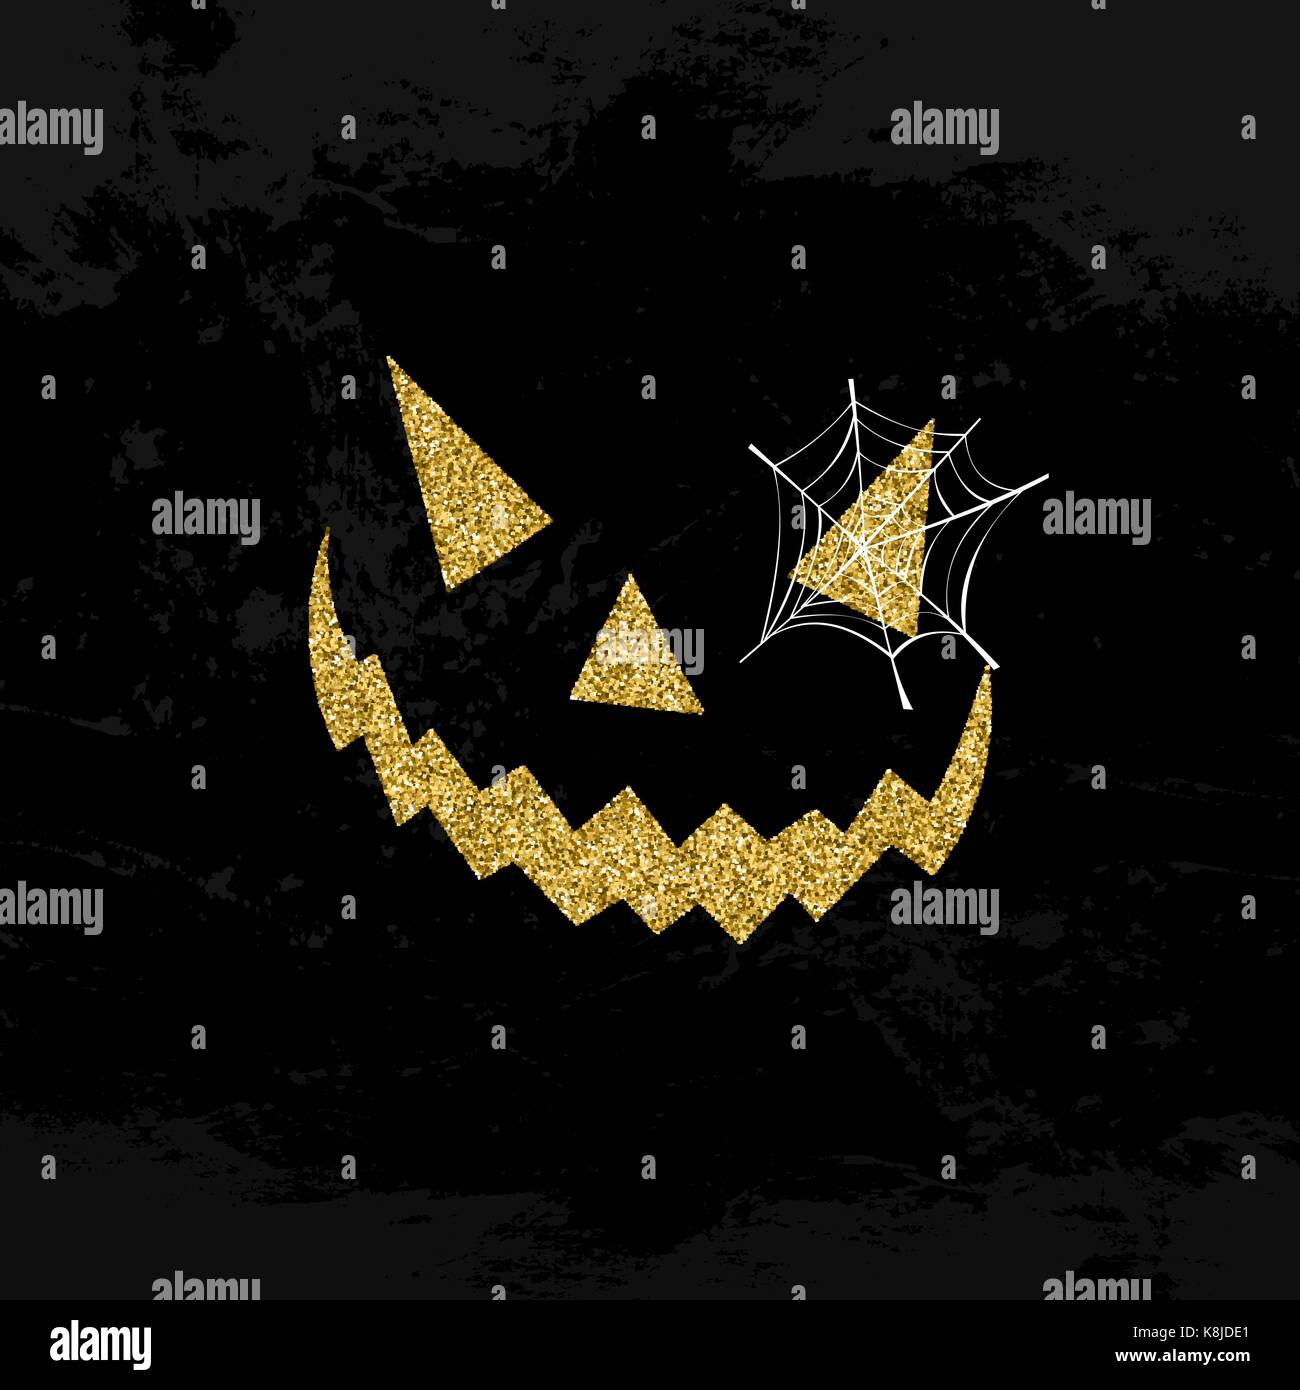 Halloween face symbole concept illustration, Jack O' Lantern réalisé de poussière glitter or sur fond noir. eps10 vector. Illustration de Vecteur